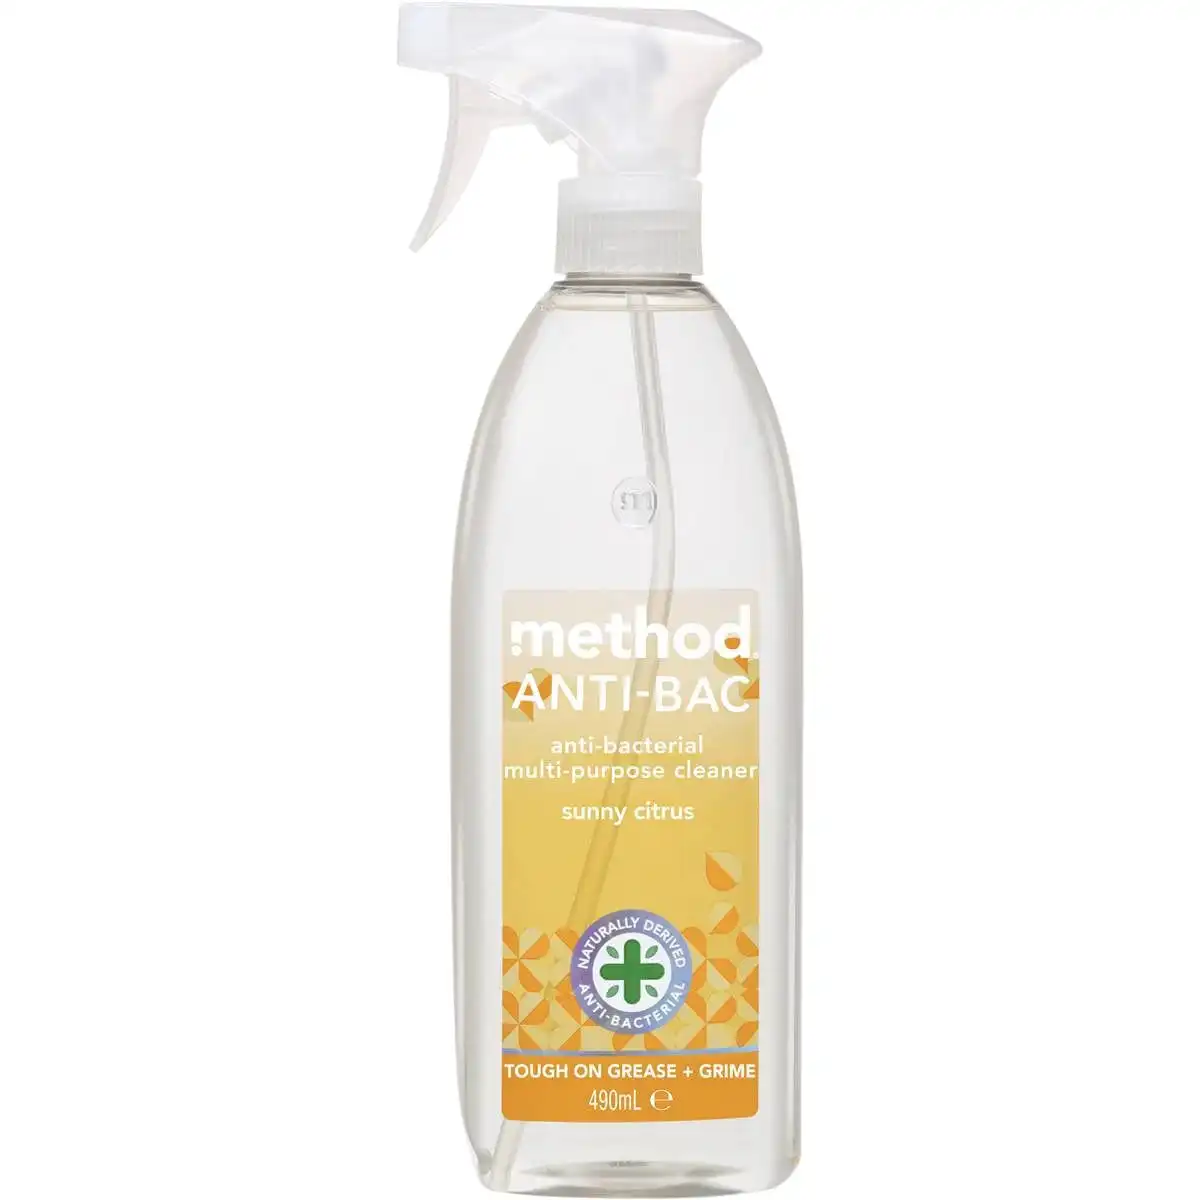 Method Anti-bac Multi-purpose Cleaner Sunny Citrus 490ml